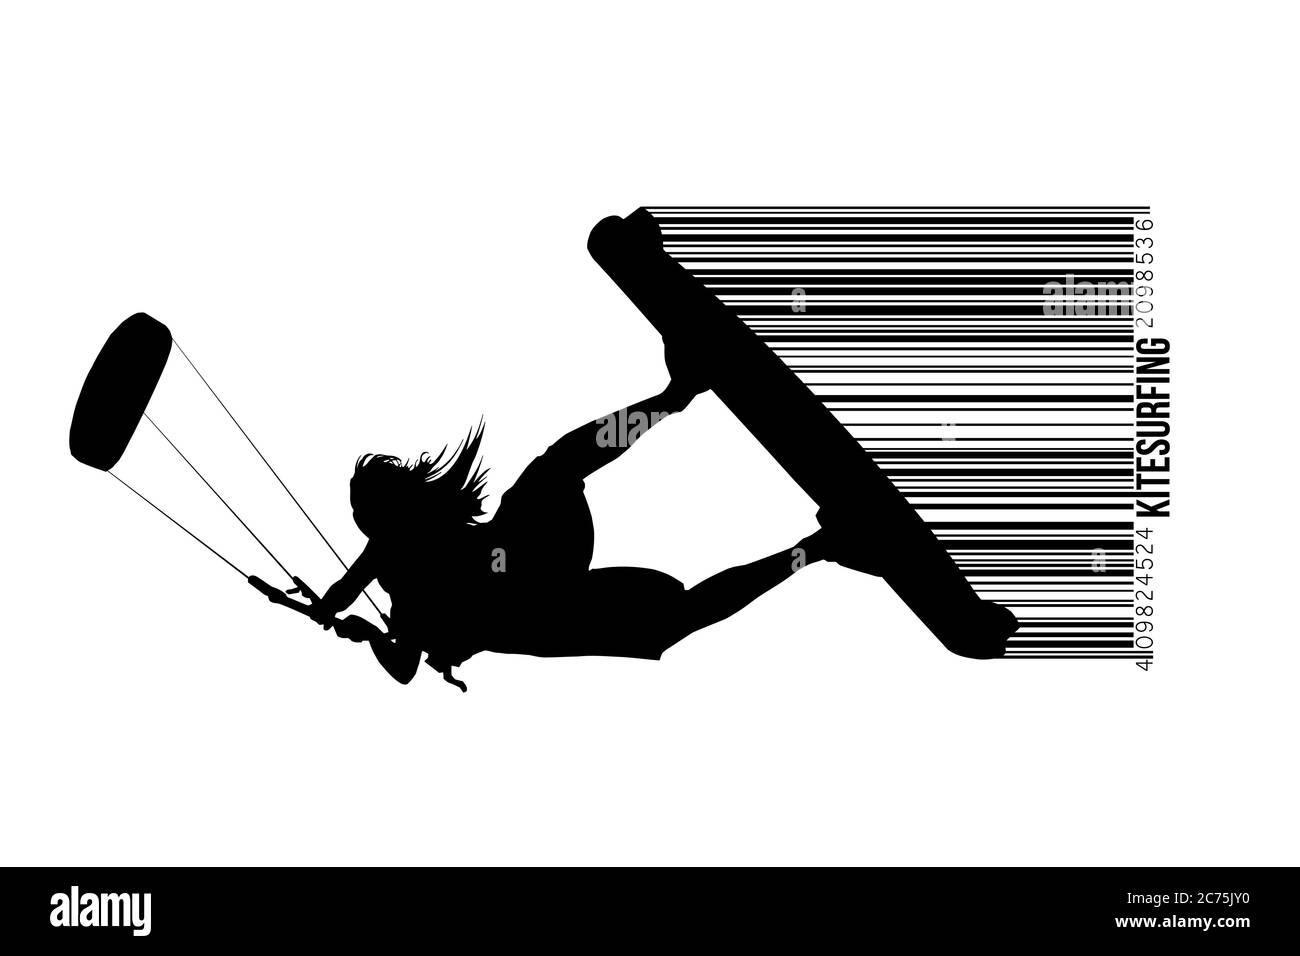 Kitesurfen und Kiteboarding. Silhouette eines Kitesurfers. Frau in einem Sprung führt einen Trick. Große Konkurrenz. Vektorgrafik. Danke für die Uhr Stock Vektor